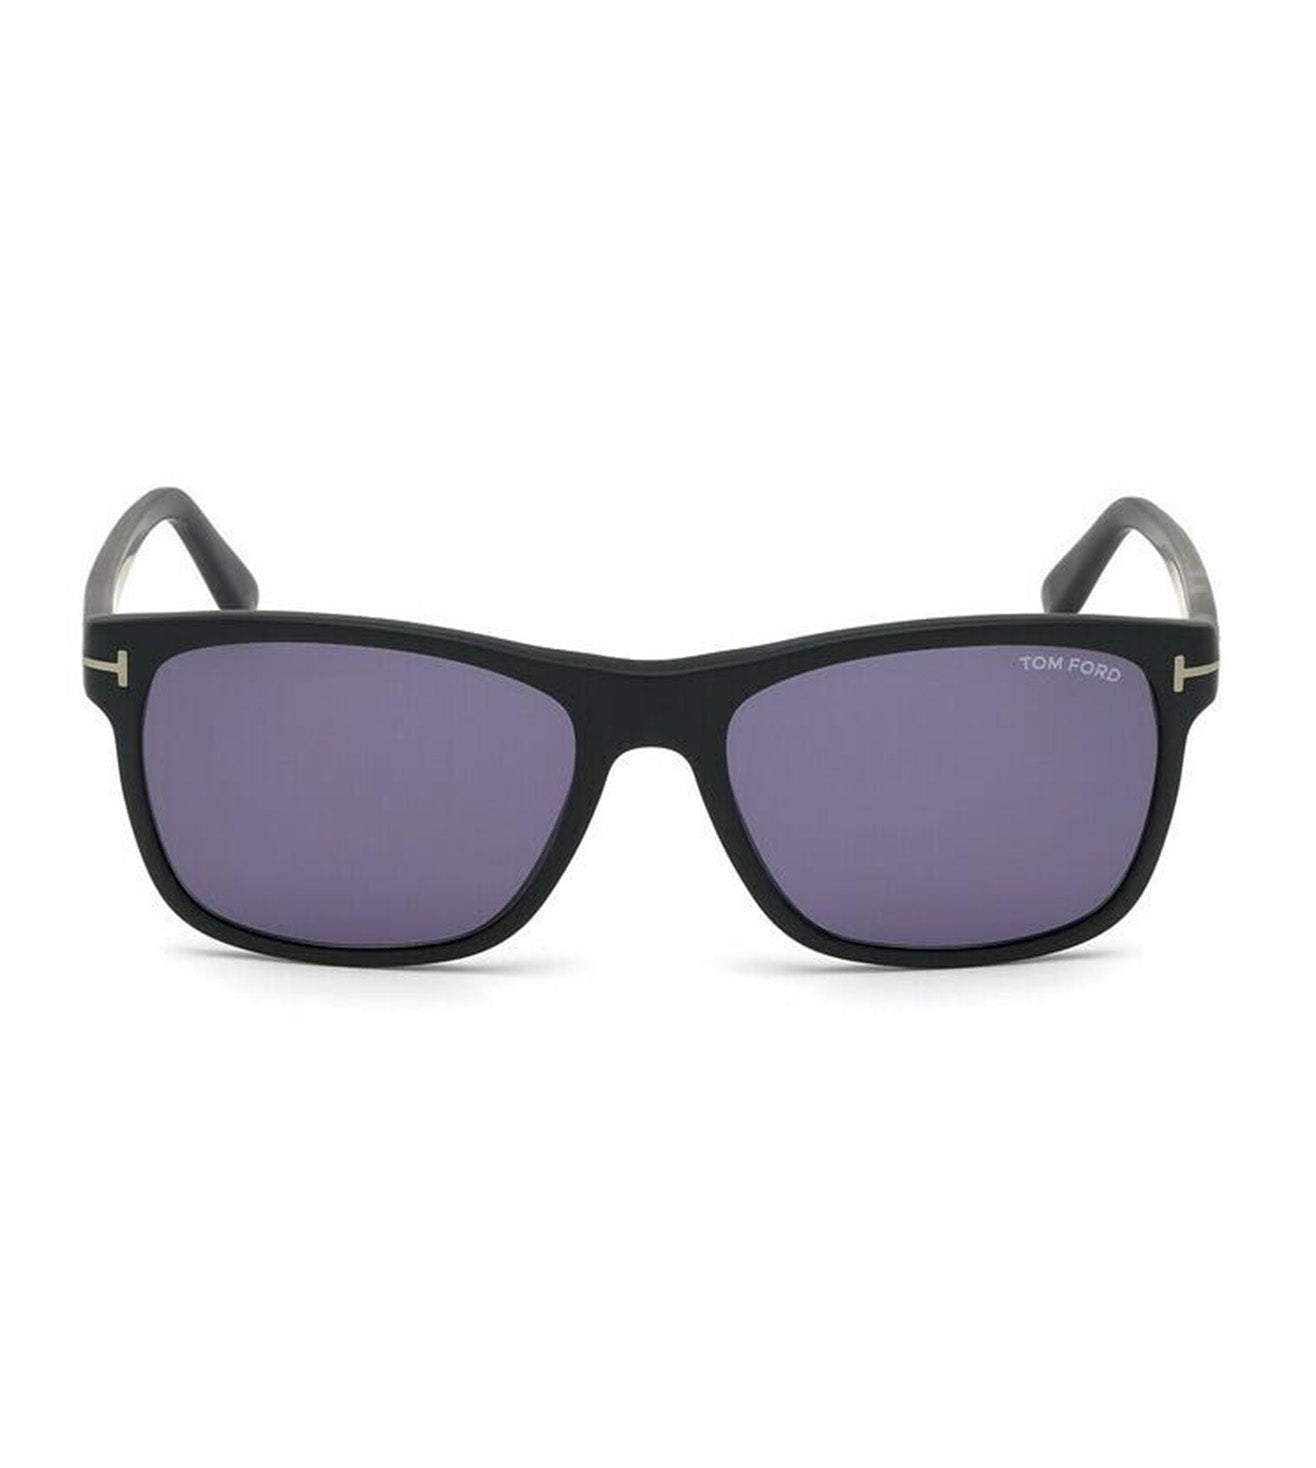 Tom Ford Men's Blue Rectangular Sunglasses